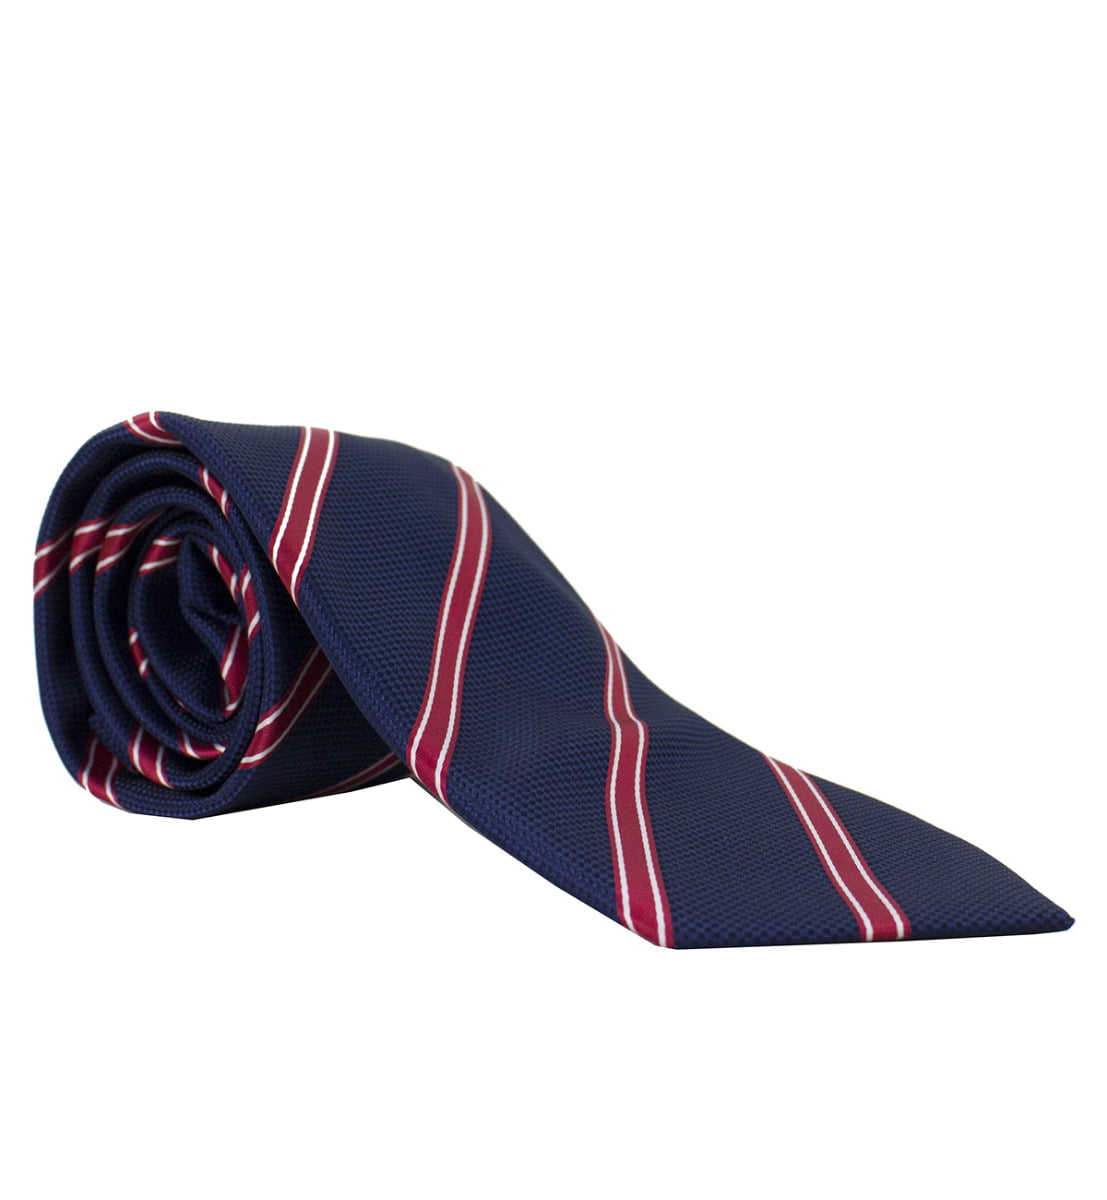 Cravatta uomo blu regimental righe diagonali rosse 8cm di larghezza made in italy